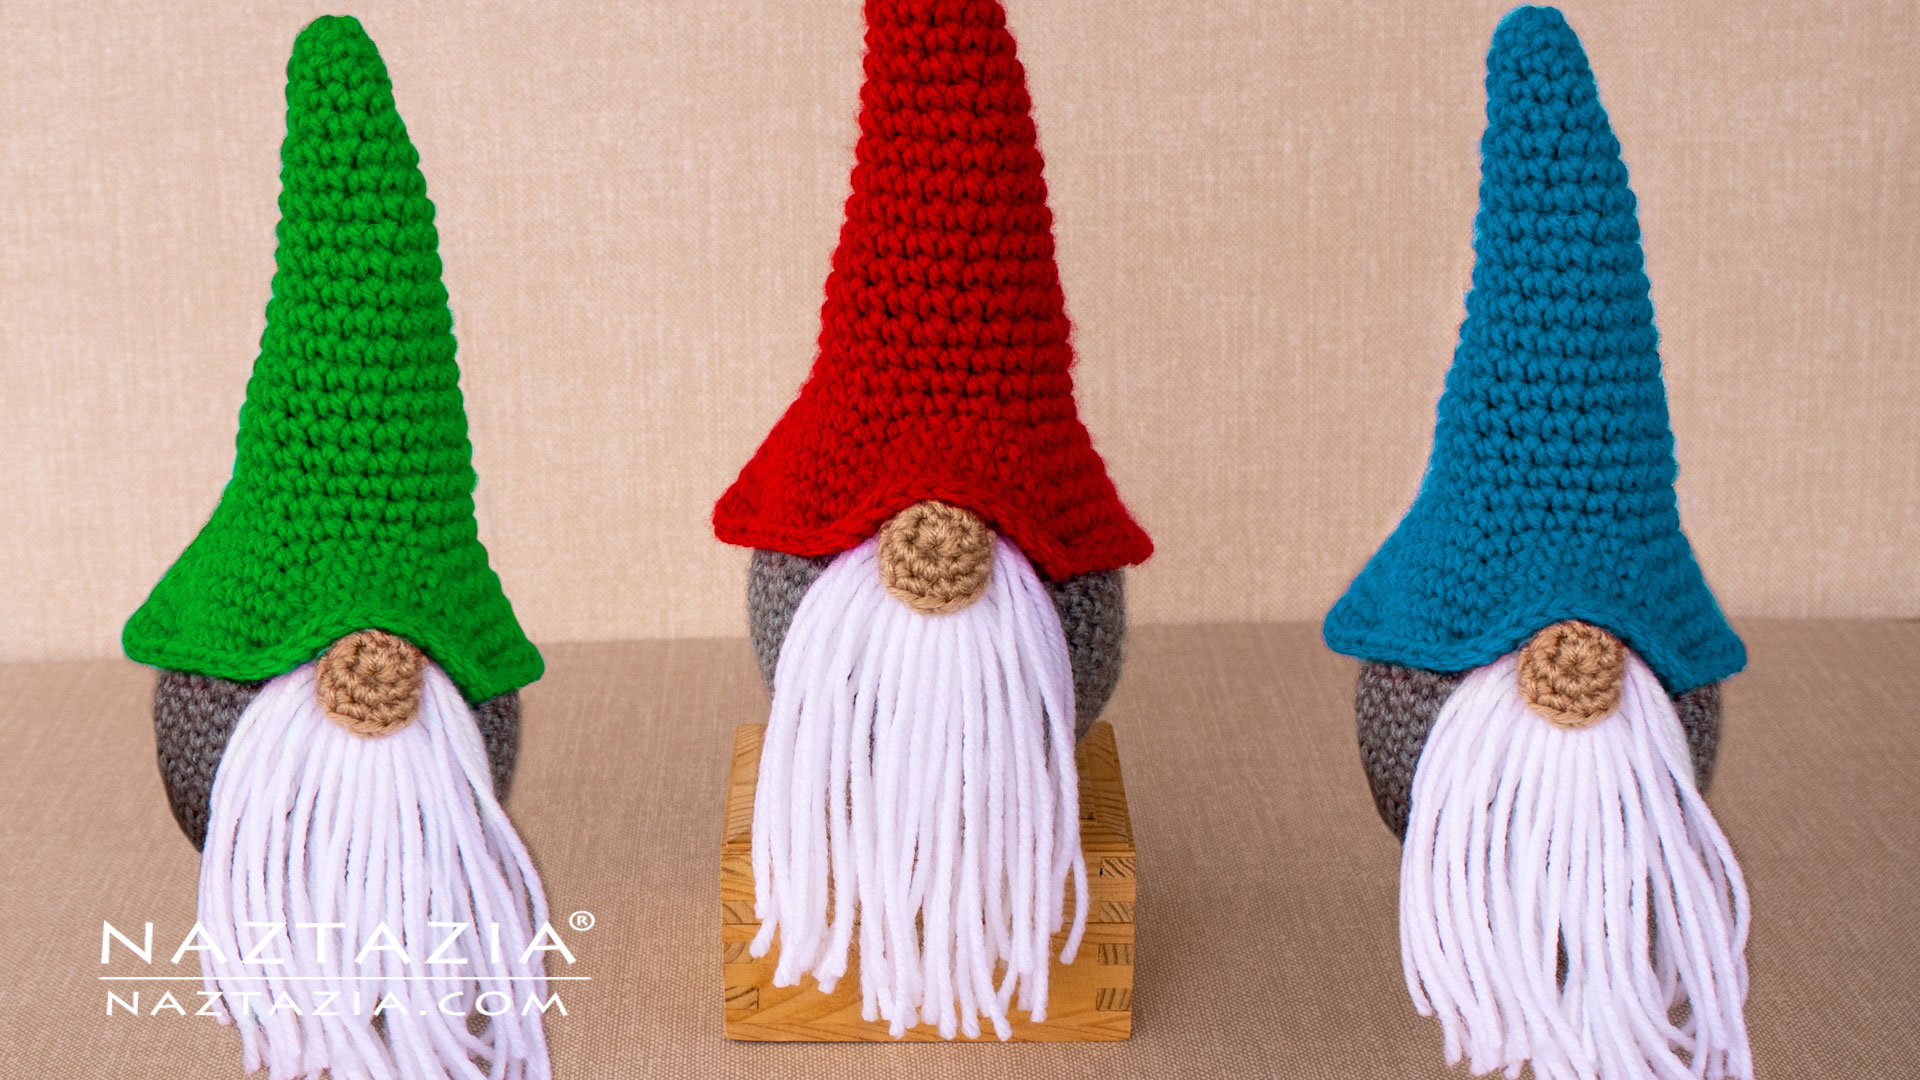 Crochet Christmas Gnome - Naztazia